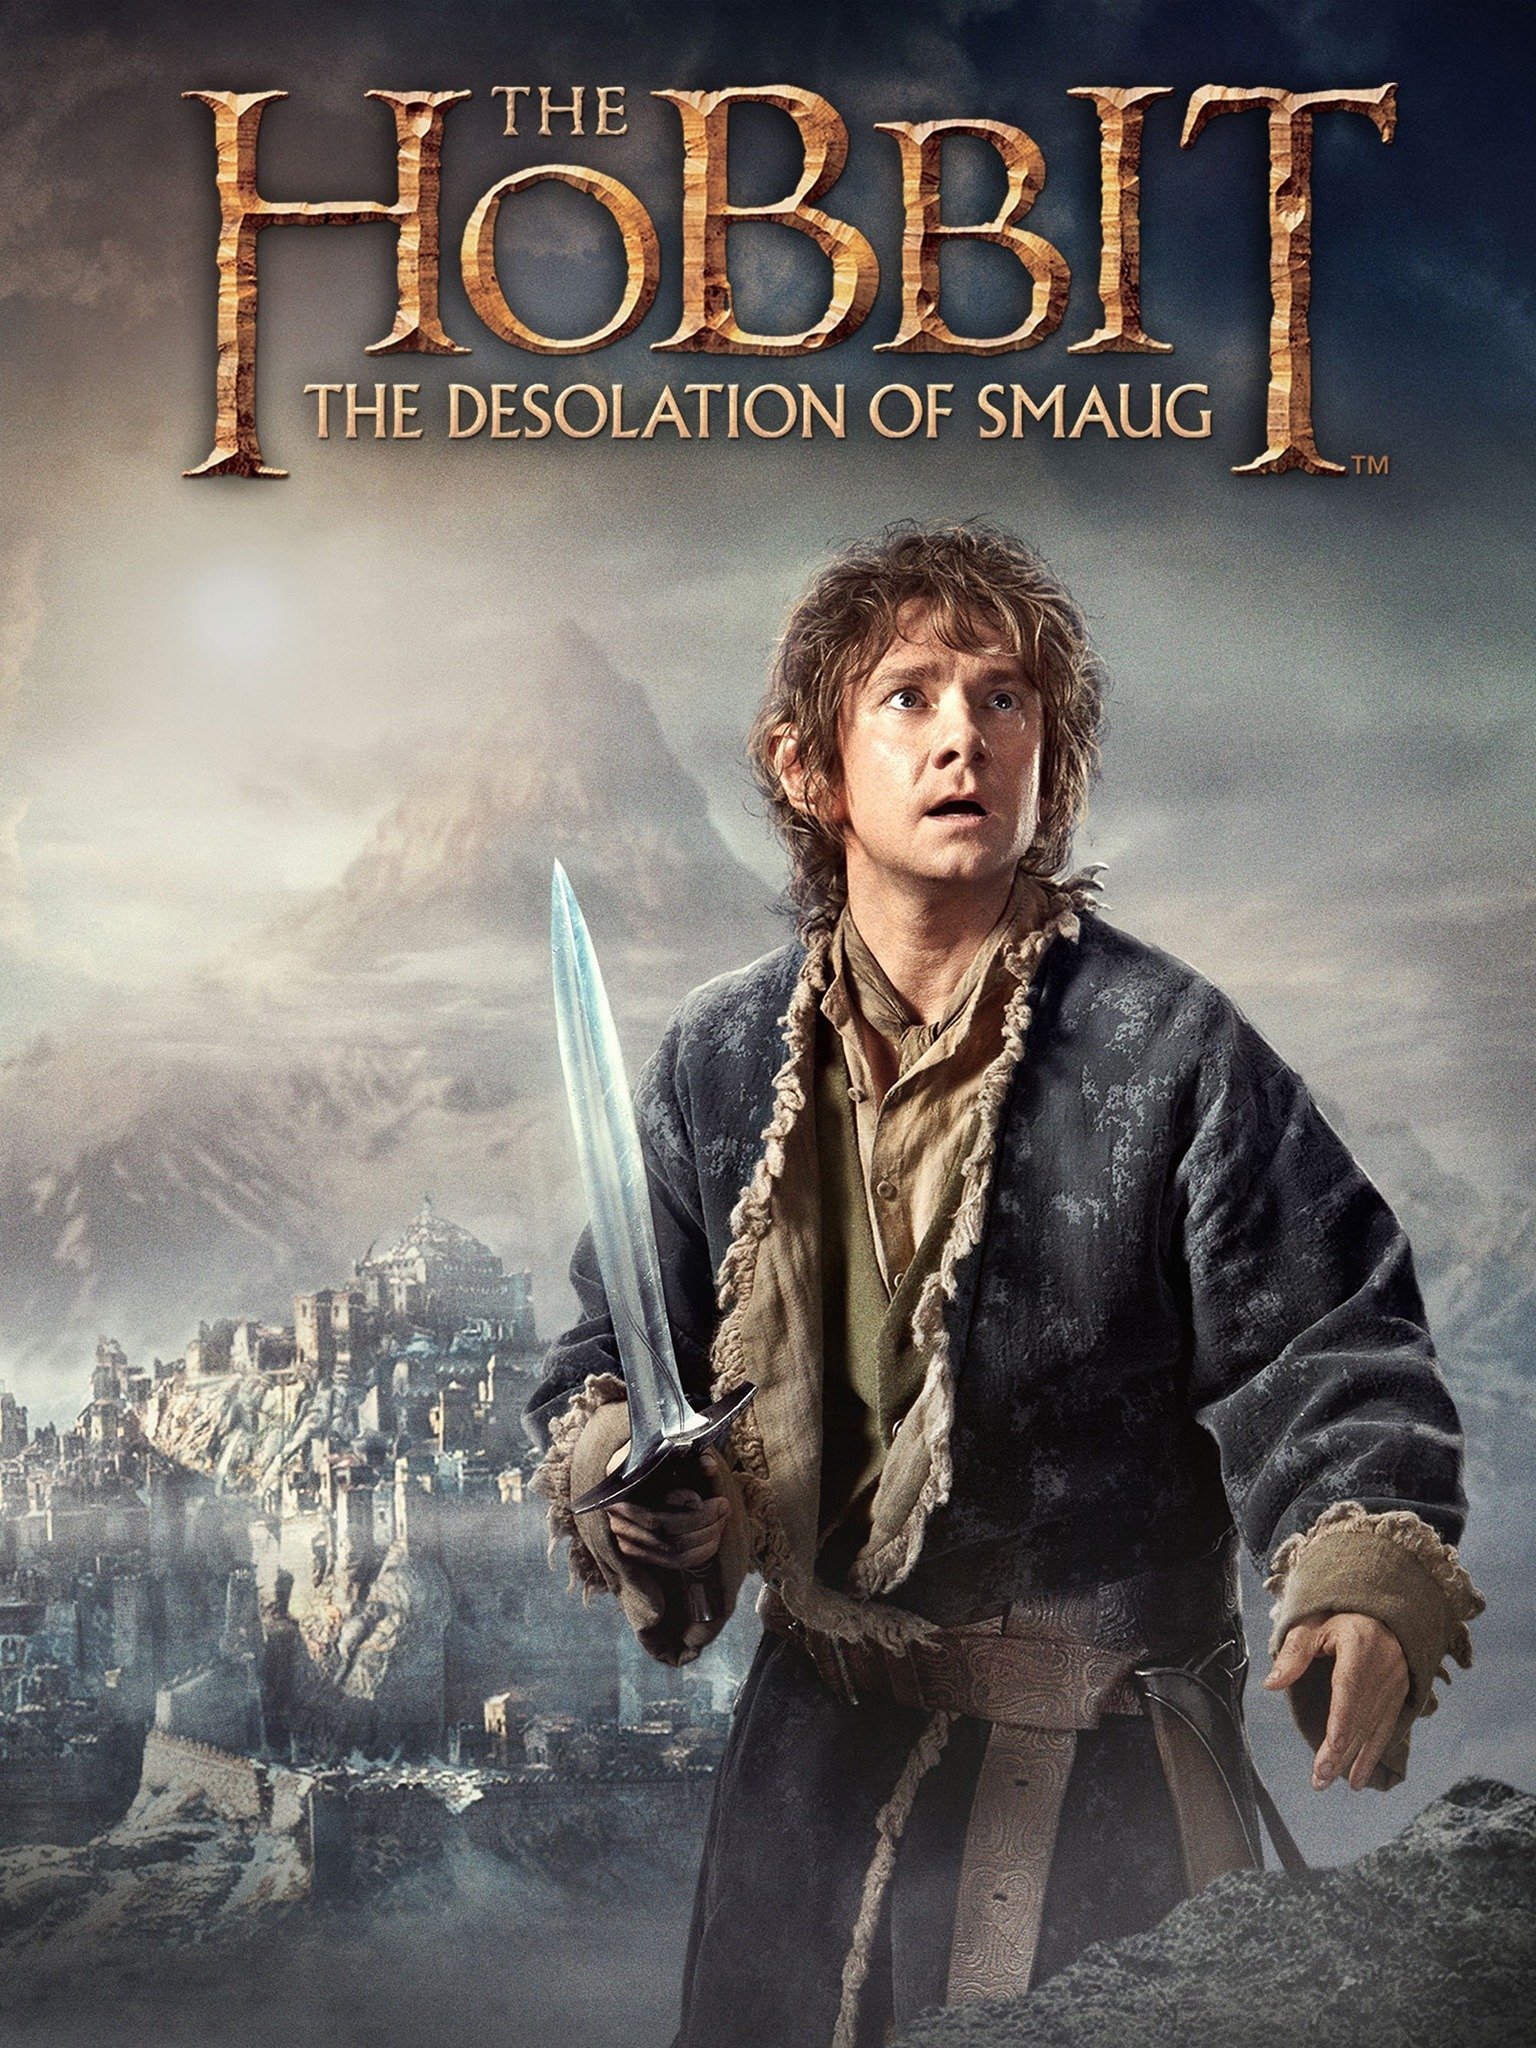 19-فیلم هابیت: ویرانی اسماگ 2013 The Hobbit The Desolation of Smaug